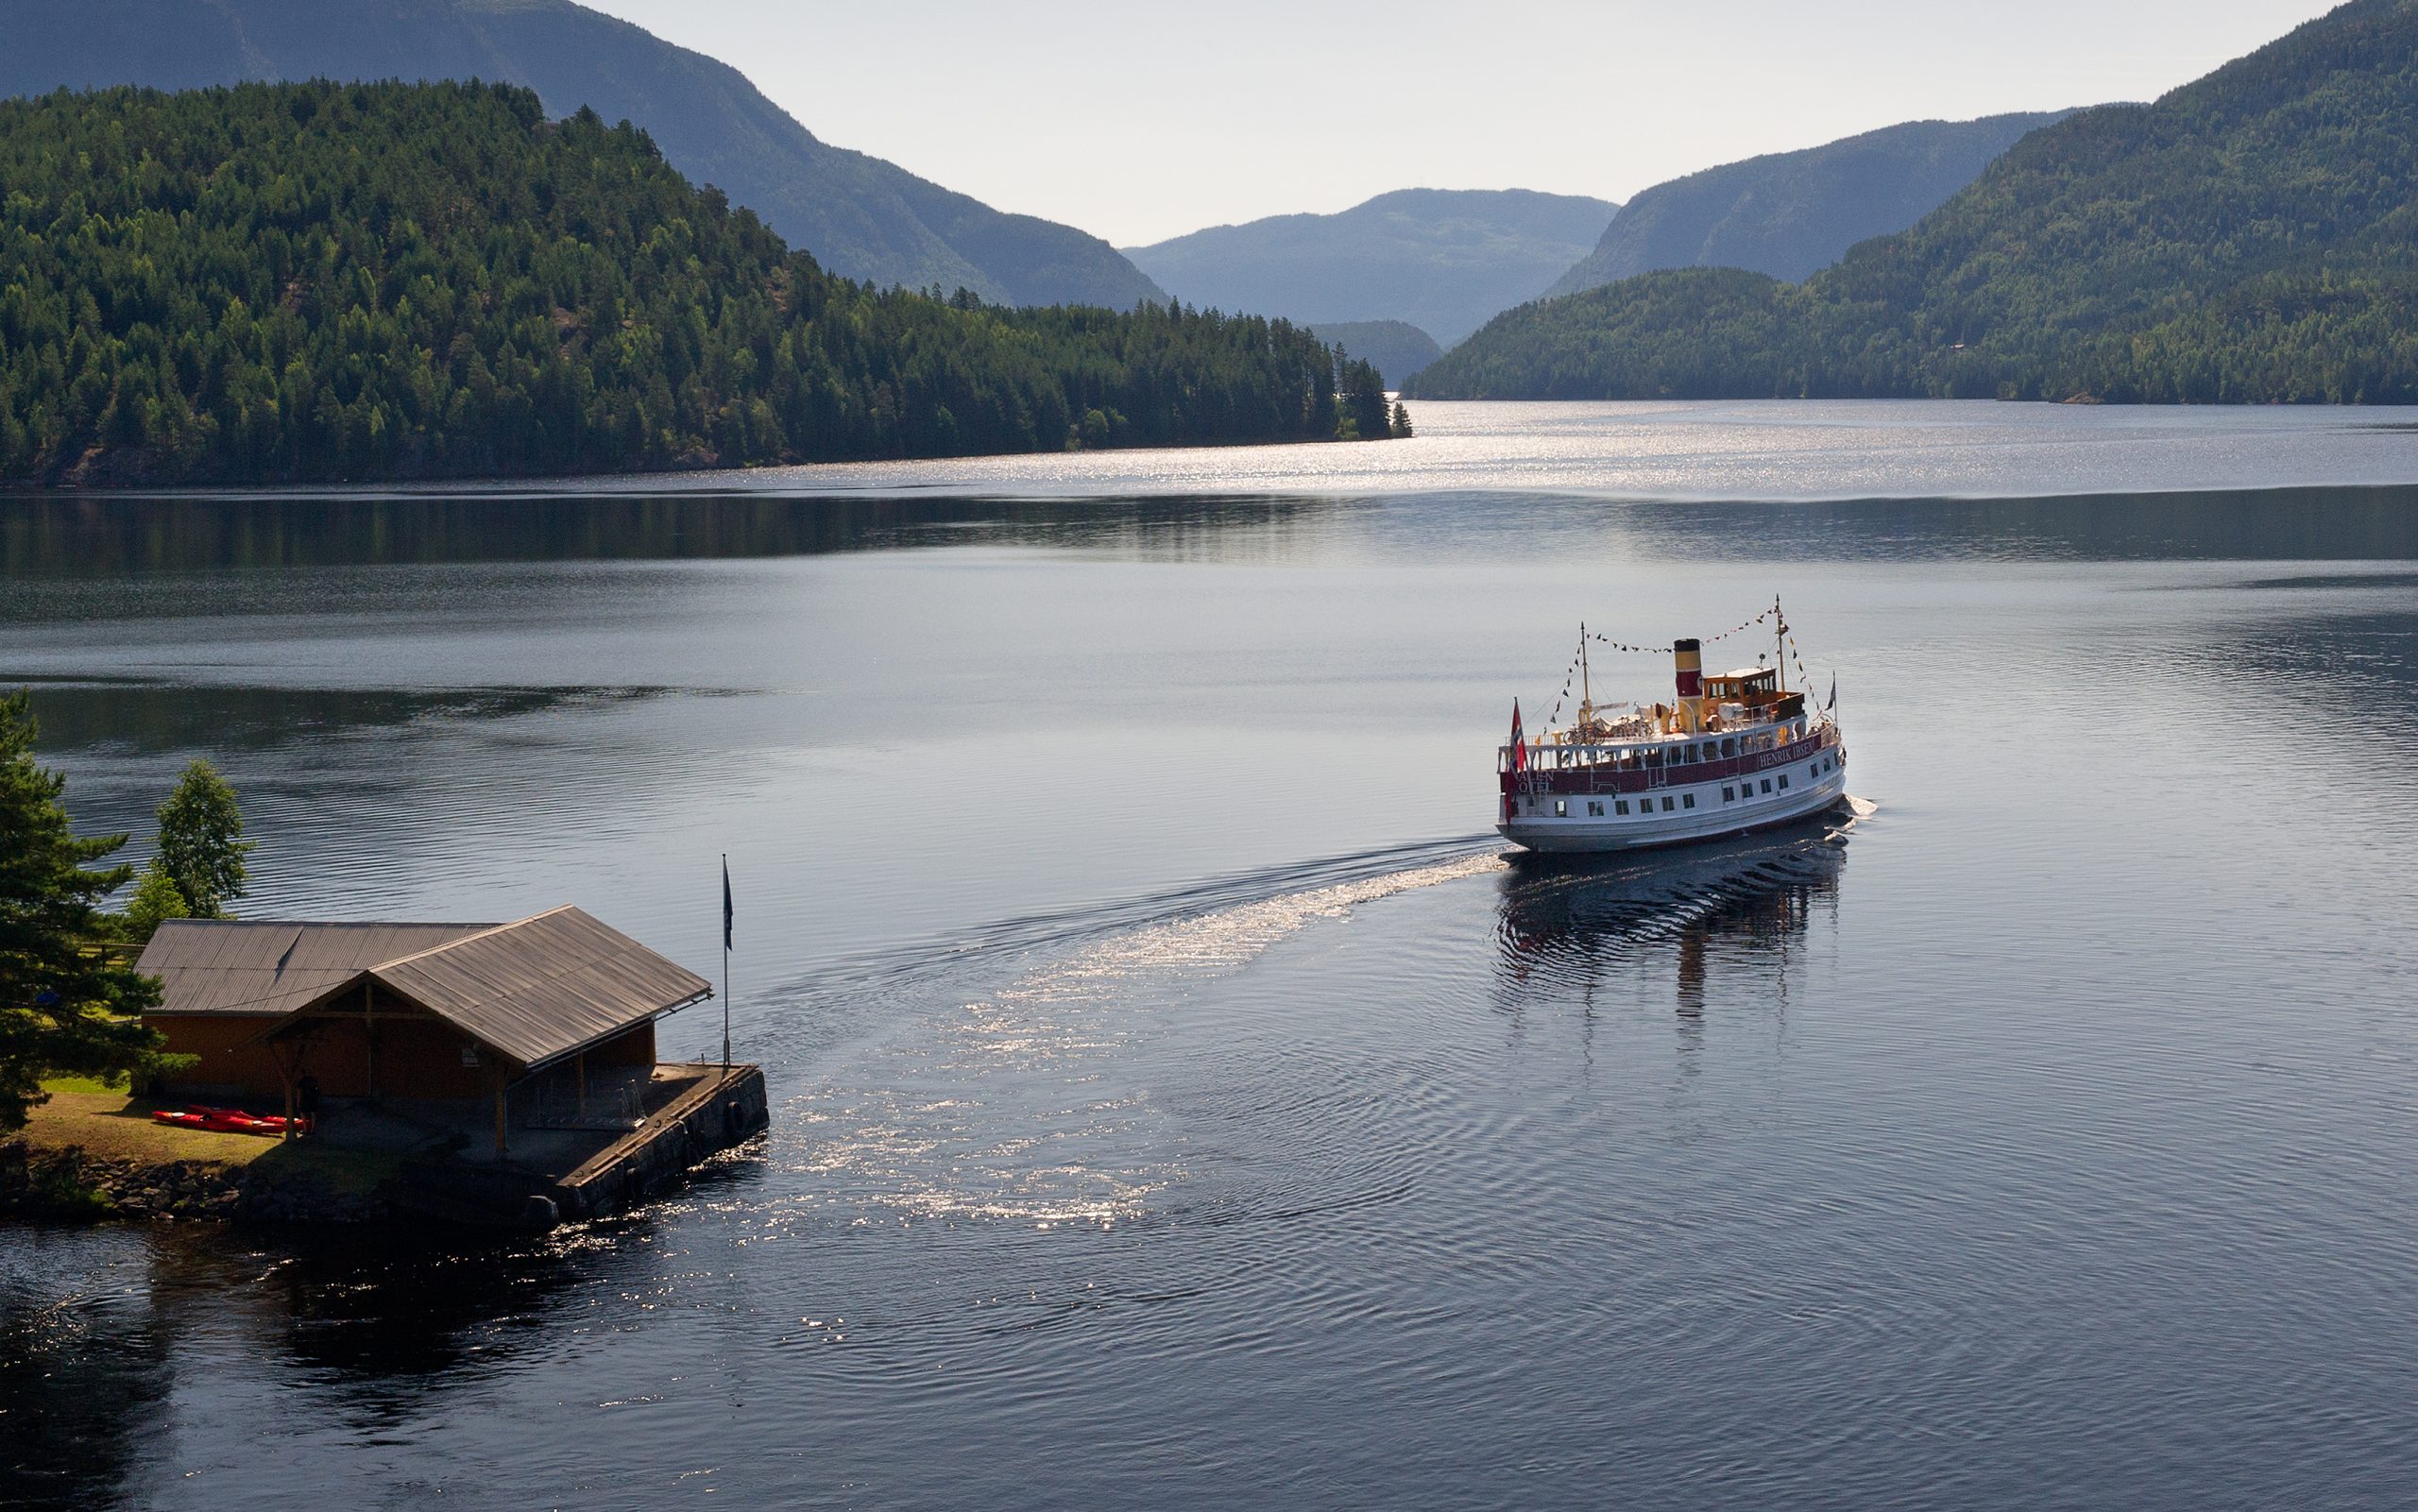 Sube a bordo del MS Victoria y disfruta del Canal Telemark y la belleza de Noruega